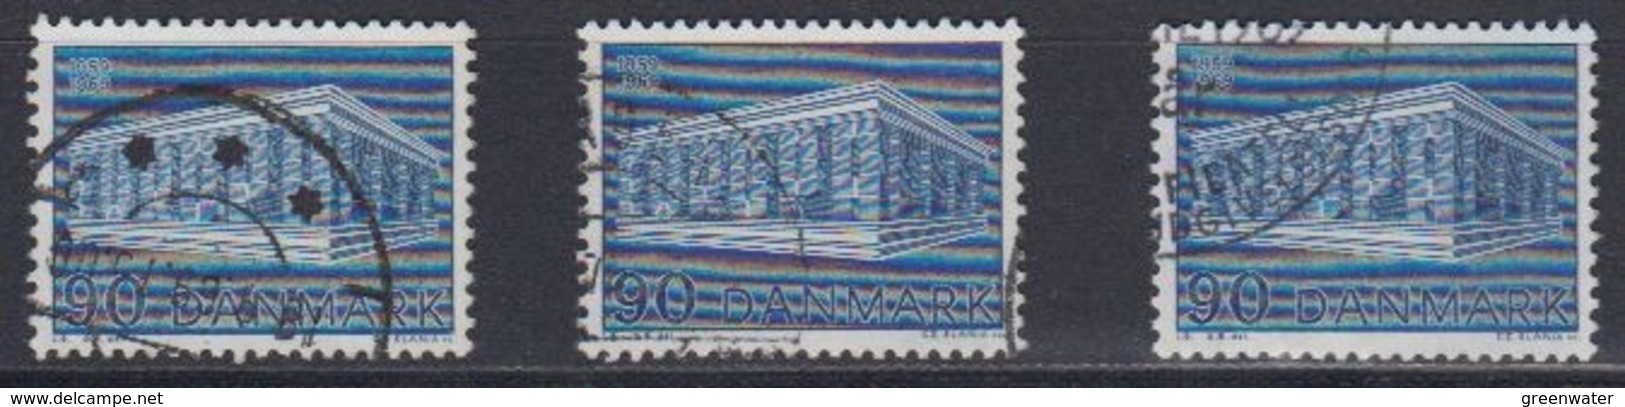 Europa Cept 1969 Denmark 1v (3x)  Used (45167G) - 1969